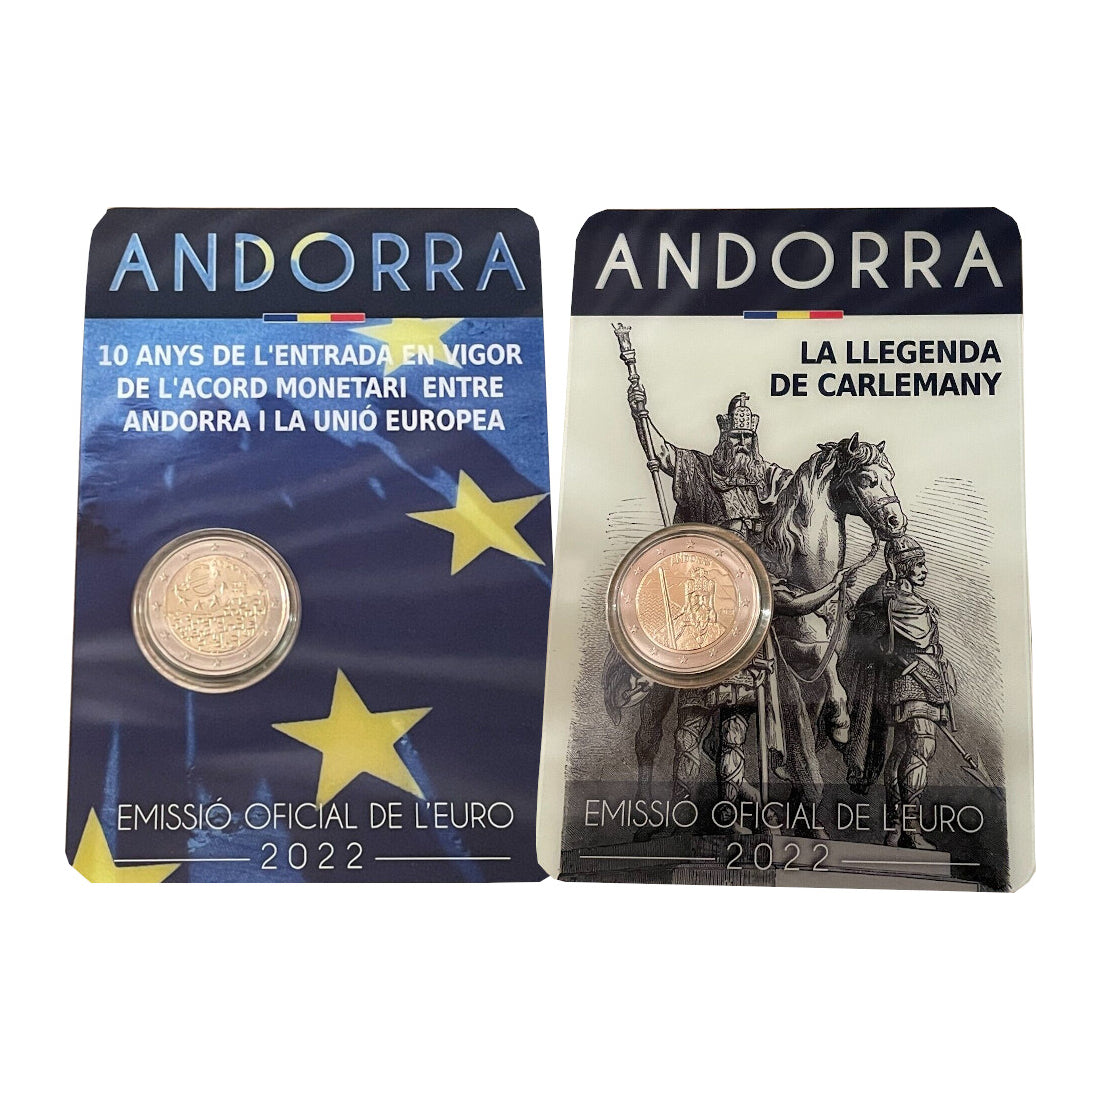 Andorra - Lote coincard 2 euros conmemorativos 2022 - Acuerdo Monetario y Carlomagno